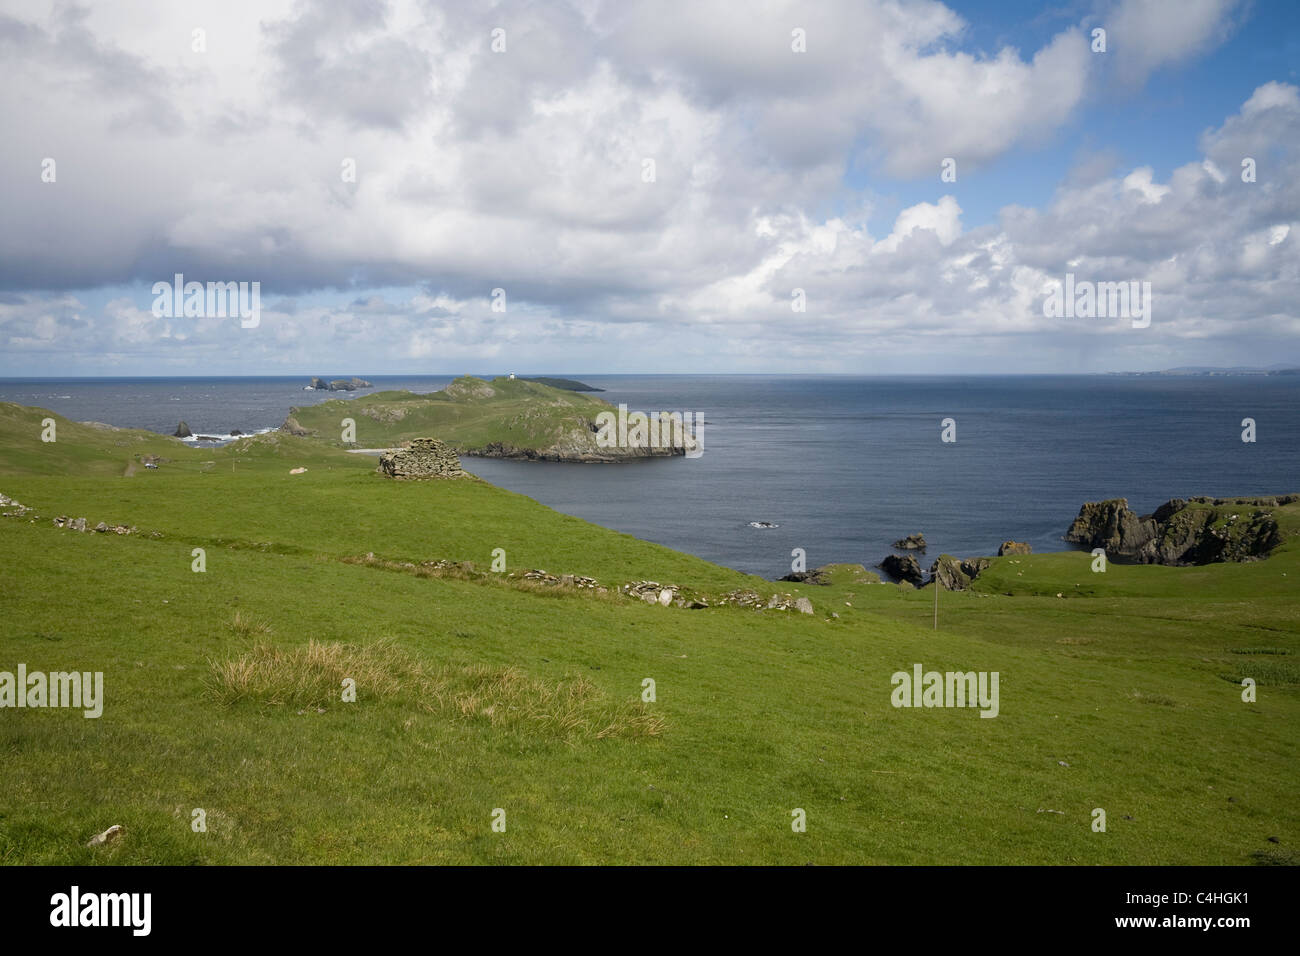 Fethaland isole Shetland Scozia una volta Shetland di Chongqing haaf stazione di pesca ora edifici abbandonati Foto Stock